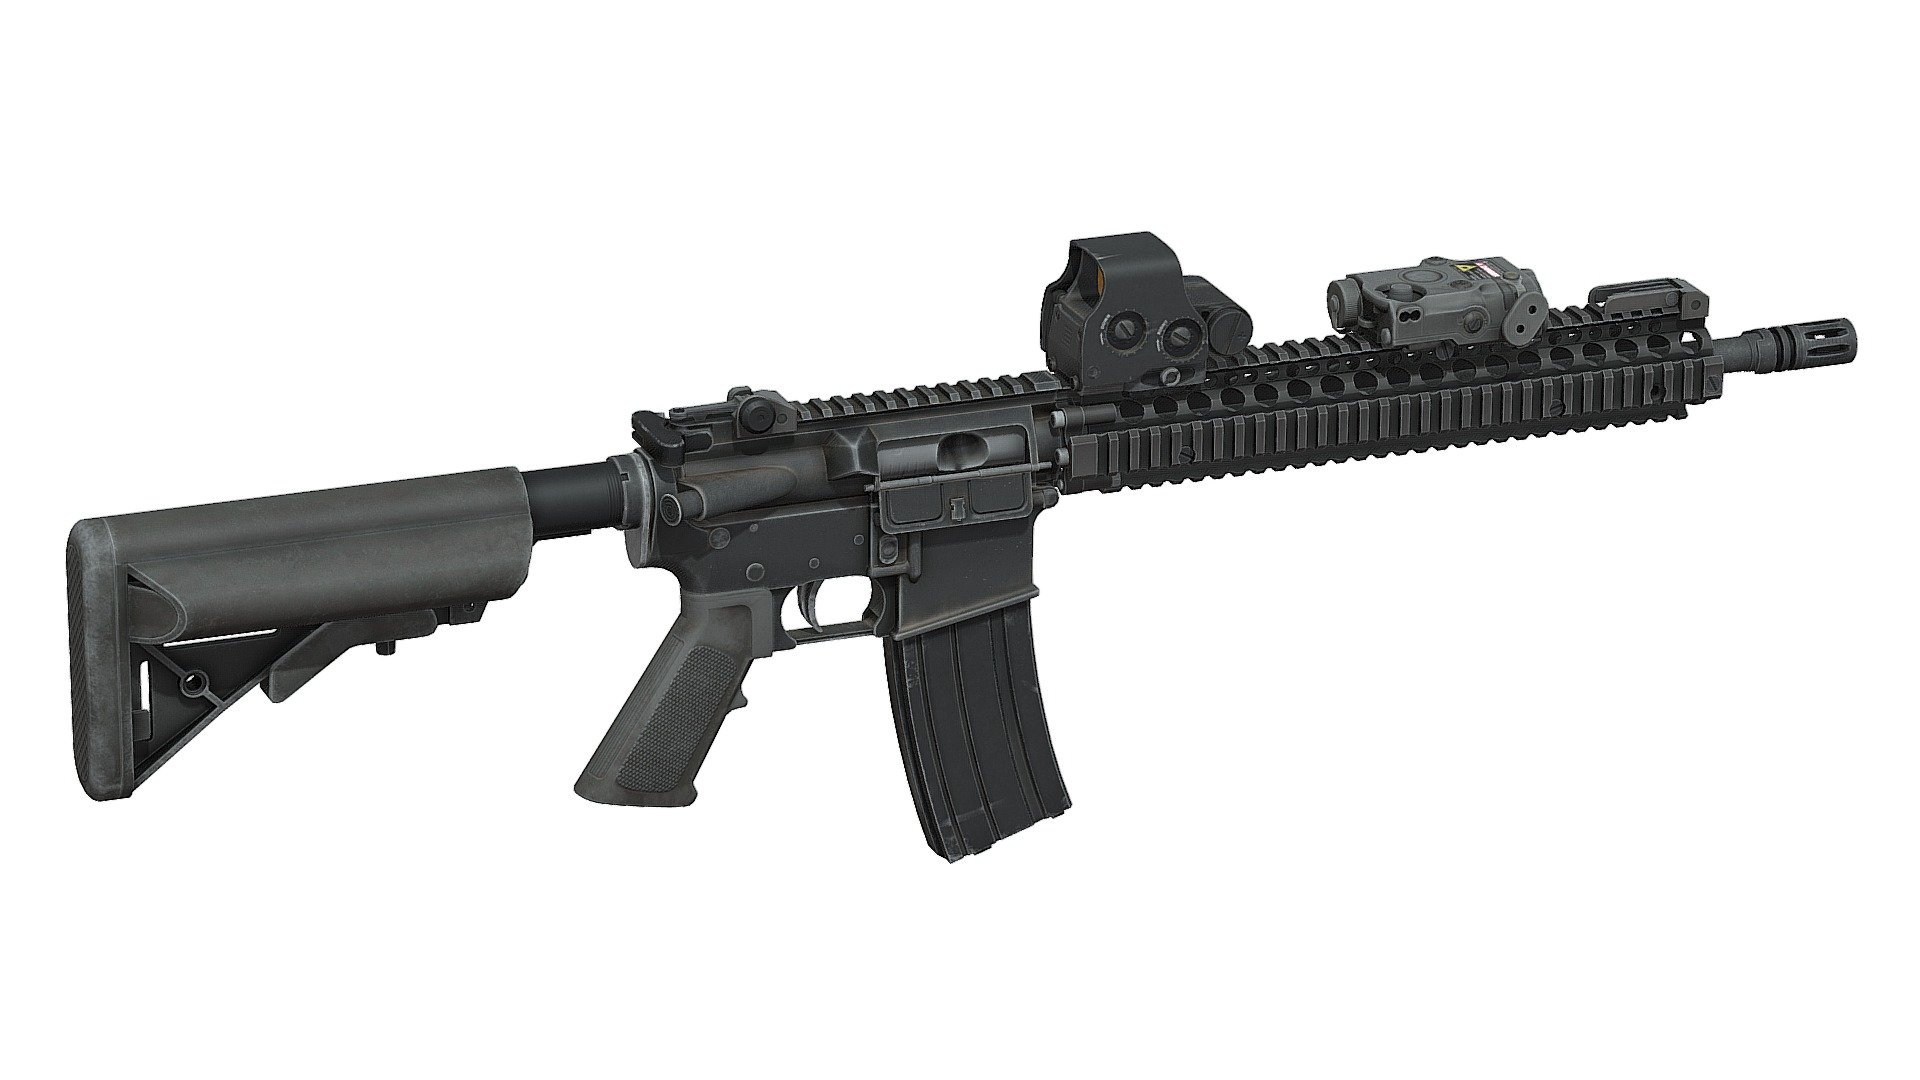 MK18 Assault Rifle - MK18 Assault Rifle - 3D model by momsboxtv 3d model